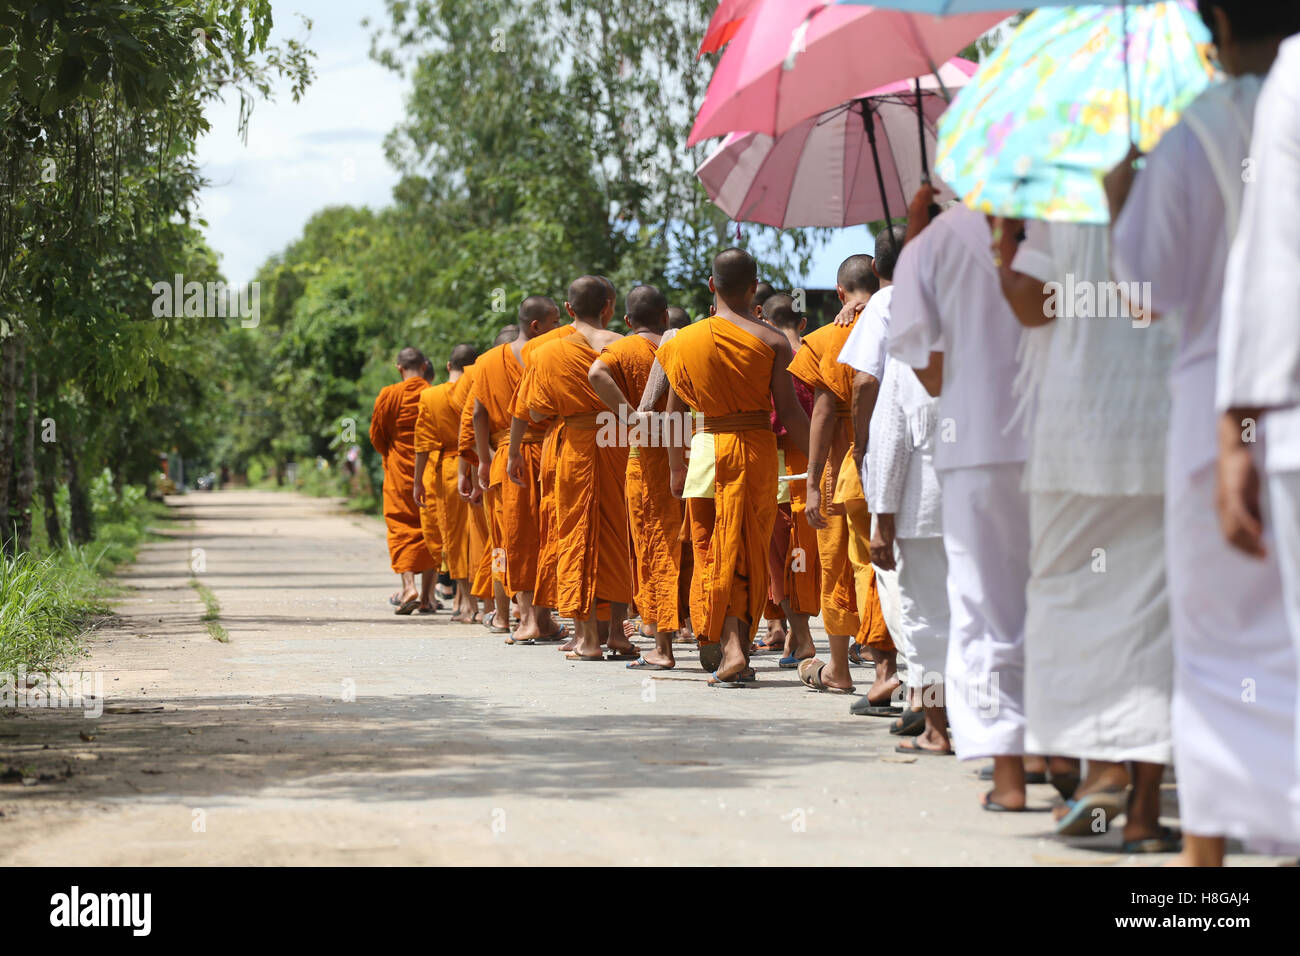 Mönche gingen auf der Straße für Kopf zum religiösen Zeremonien in der traditionellen buddhistischen Tempel. Stockfoto